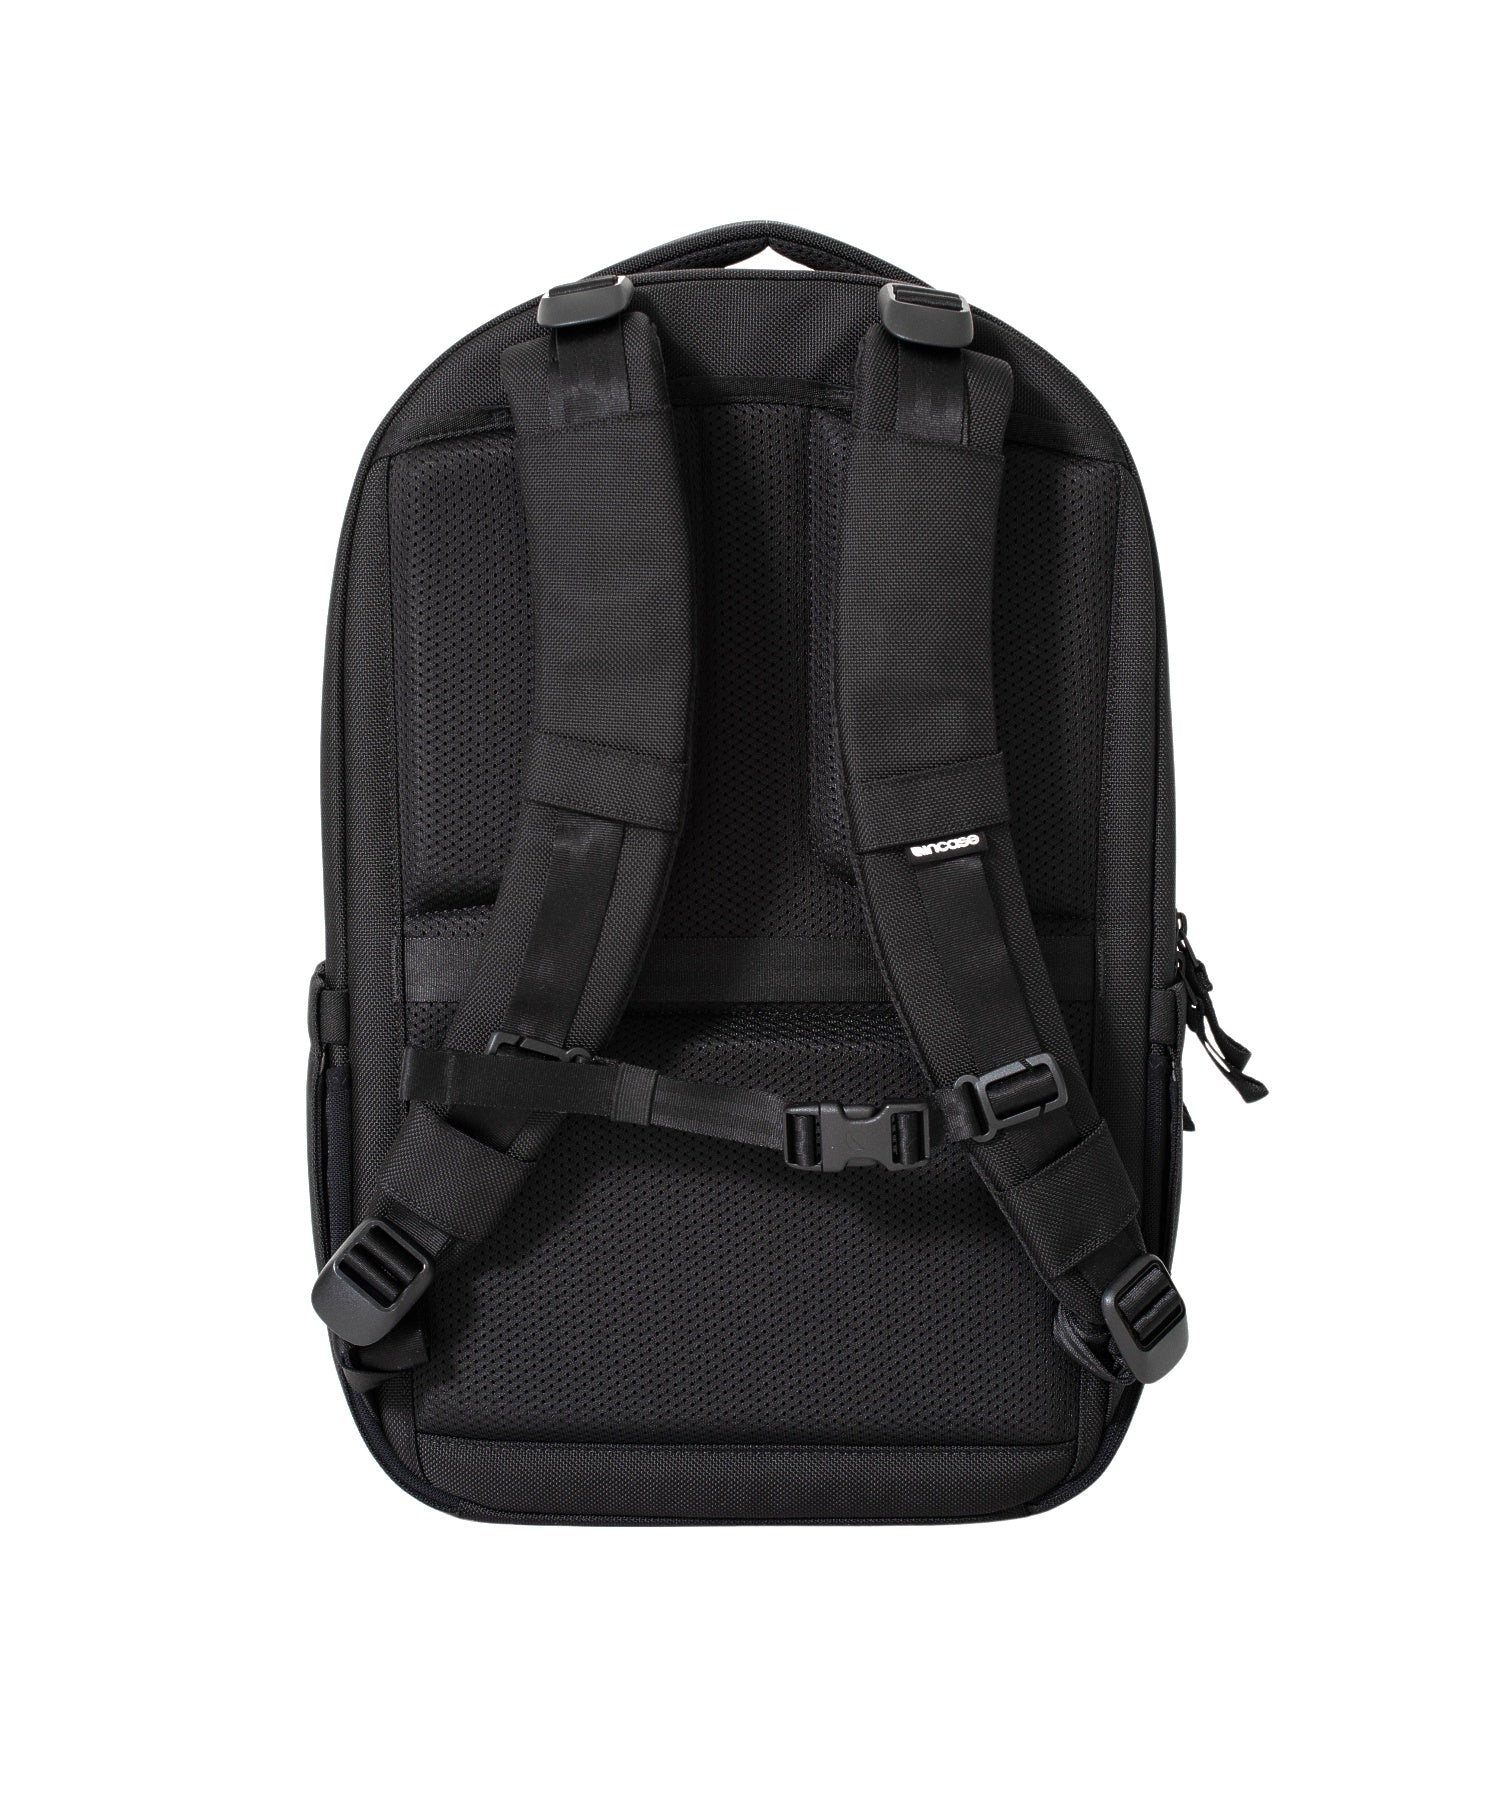 Incase Tracks Backpack 18L-Black